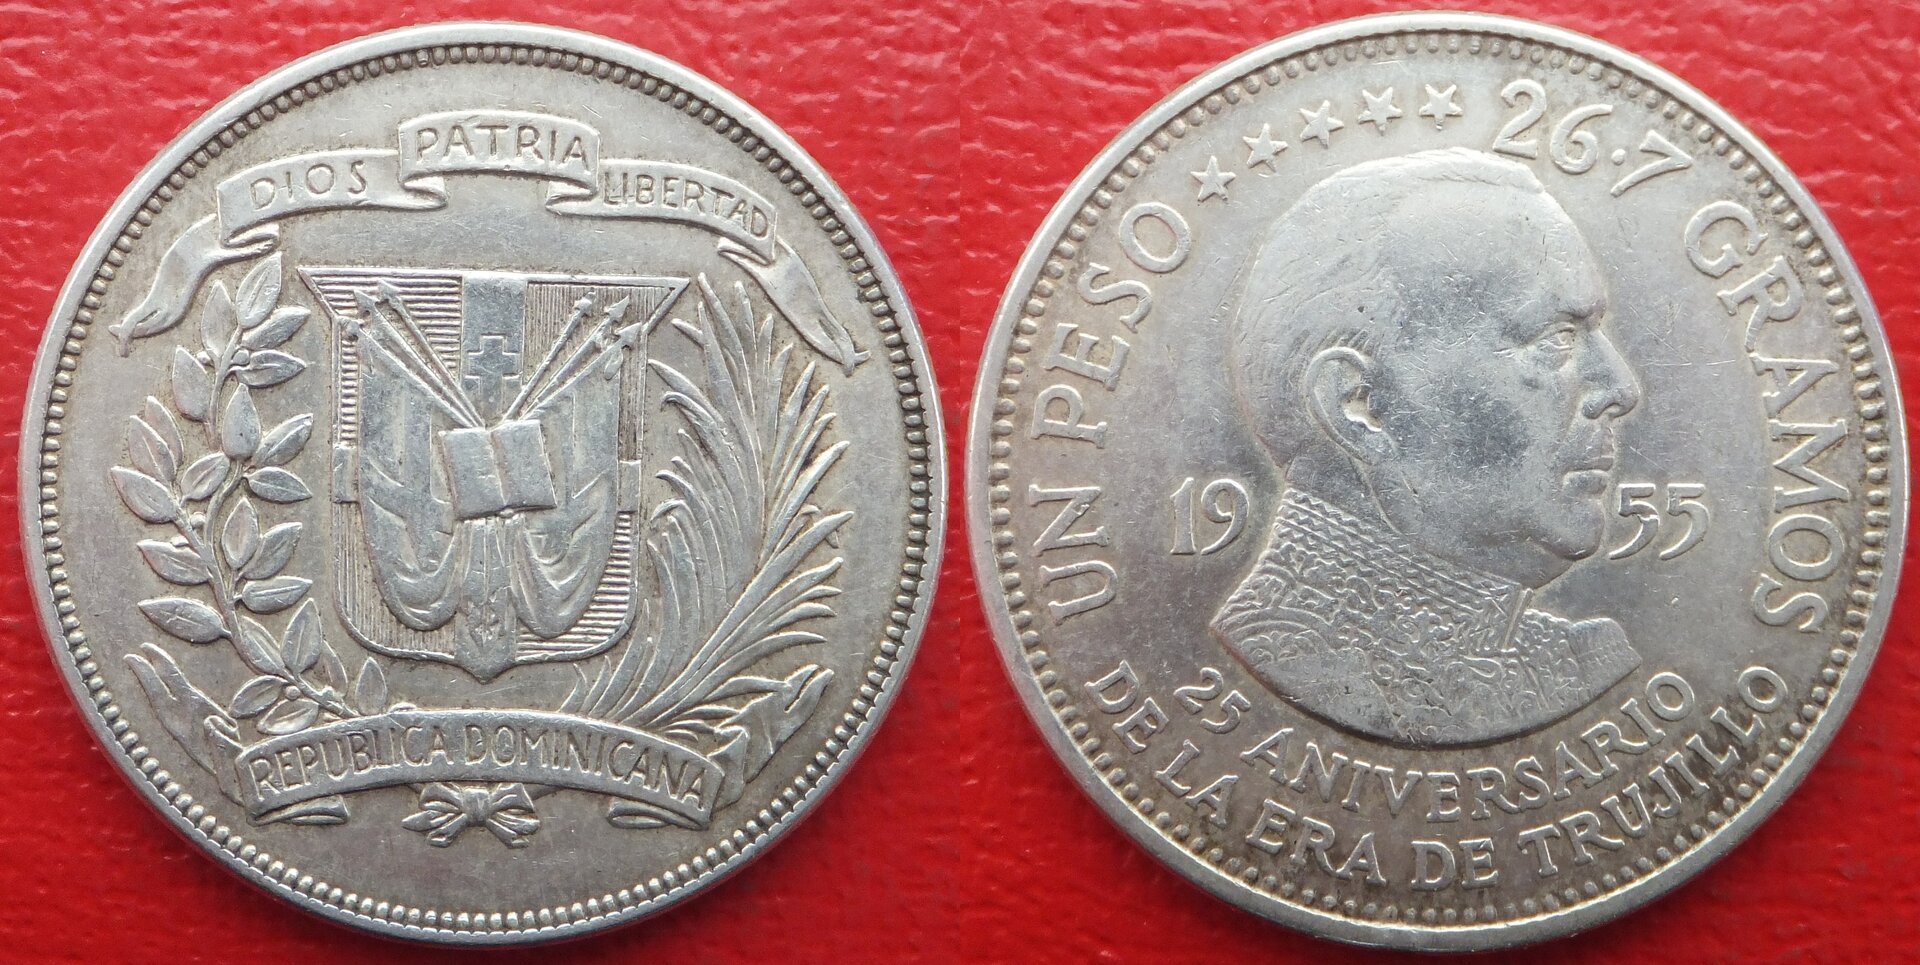 Dominican Republic 1 peso 1955 (3).jpg